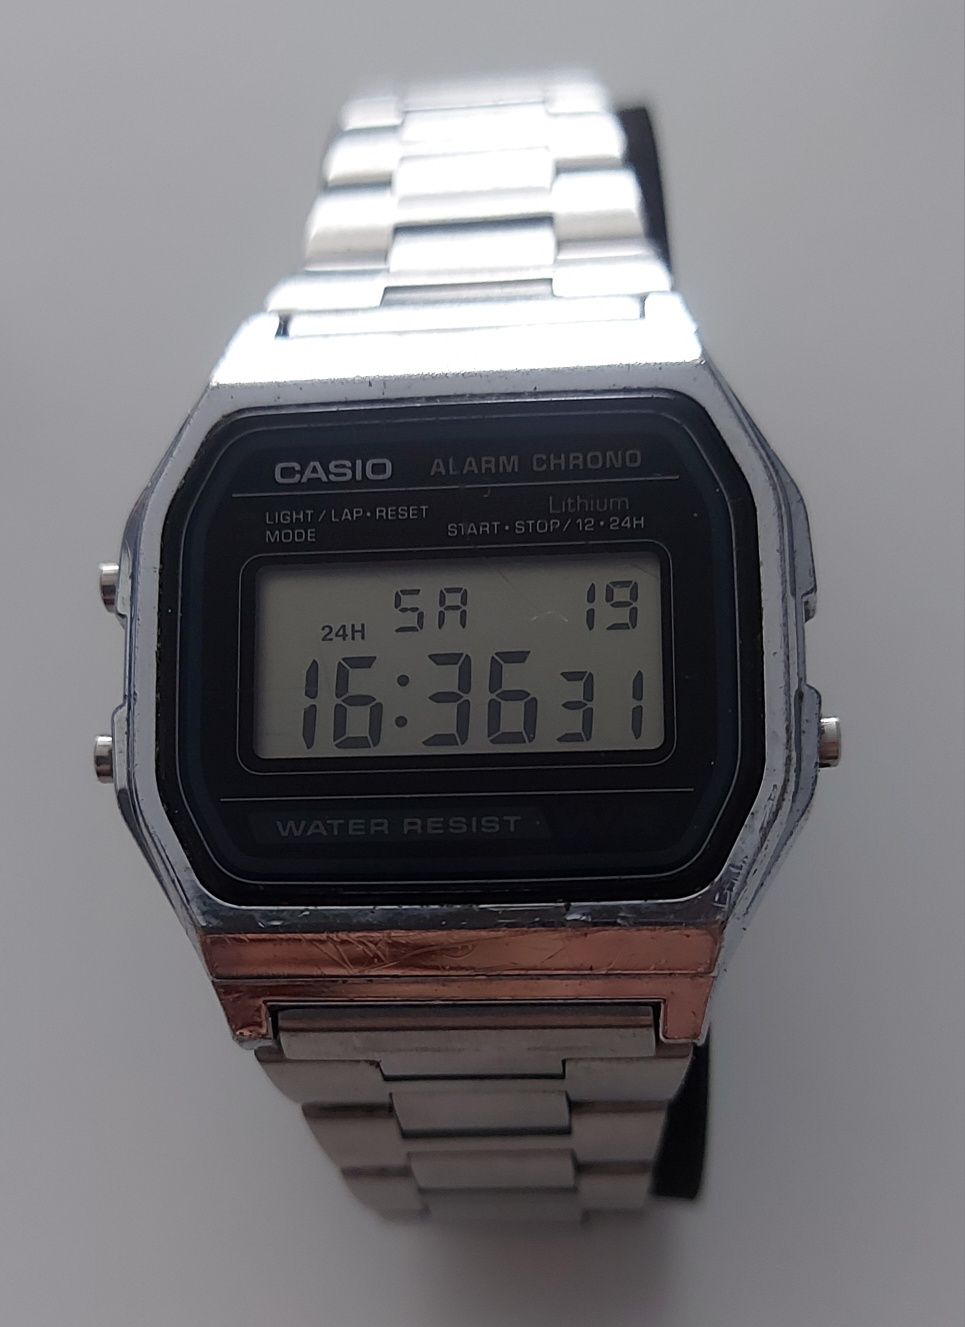 Casio A158W zegarek